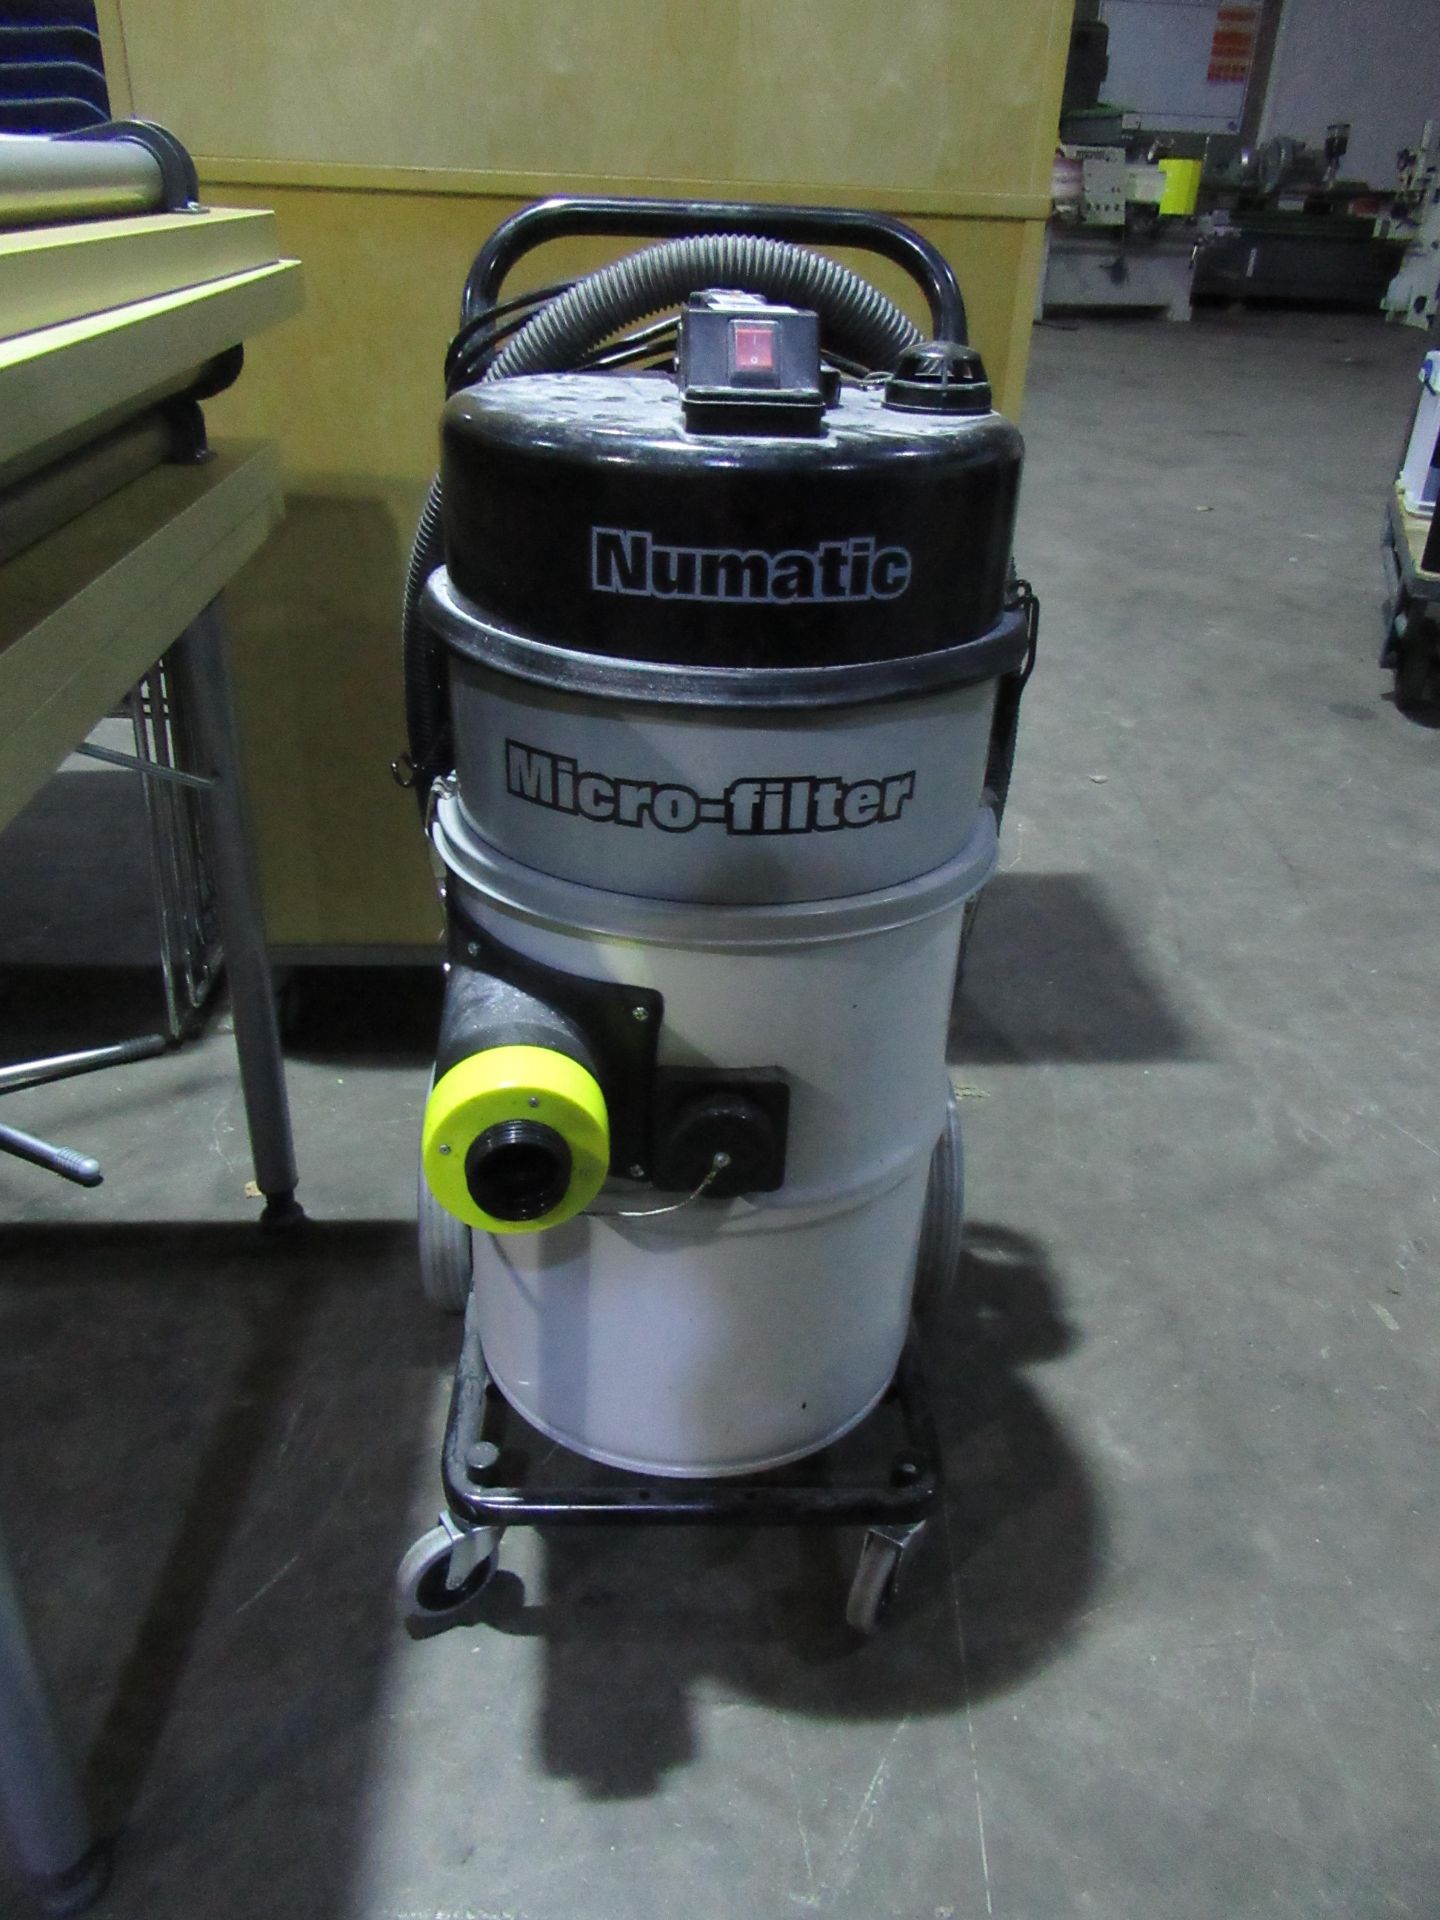 A Numatic Micro-Filter 240V Vacuum